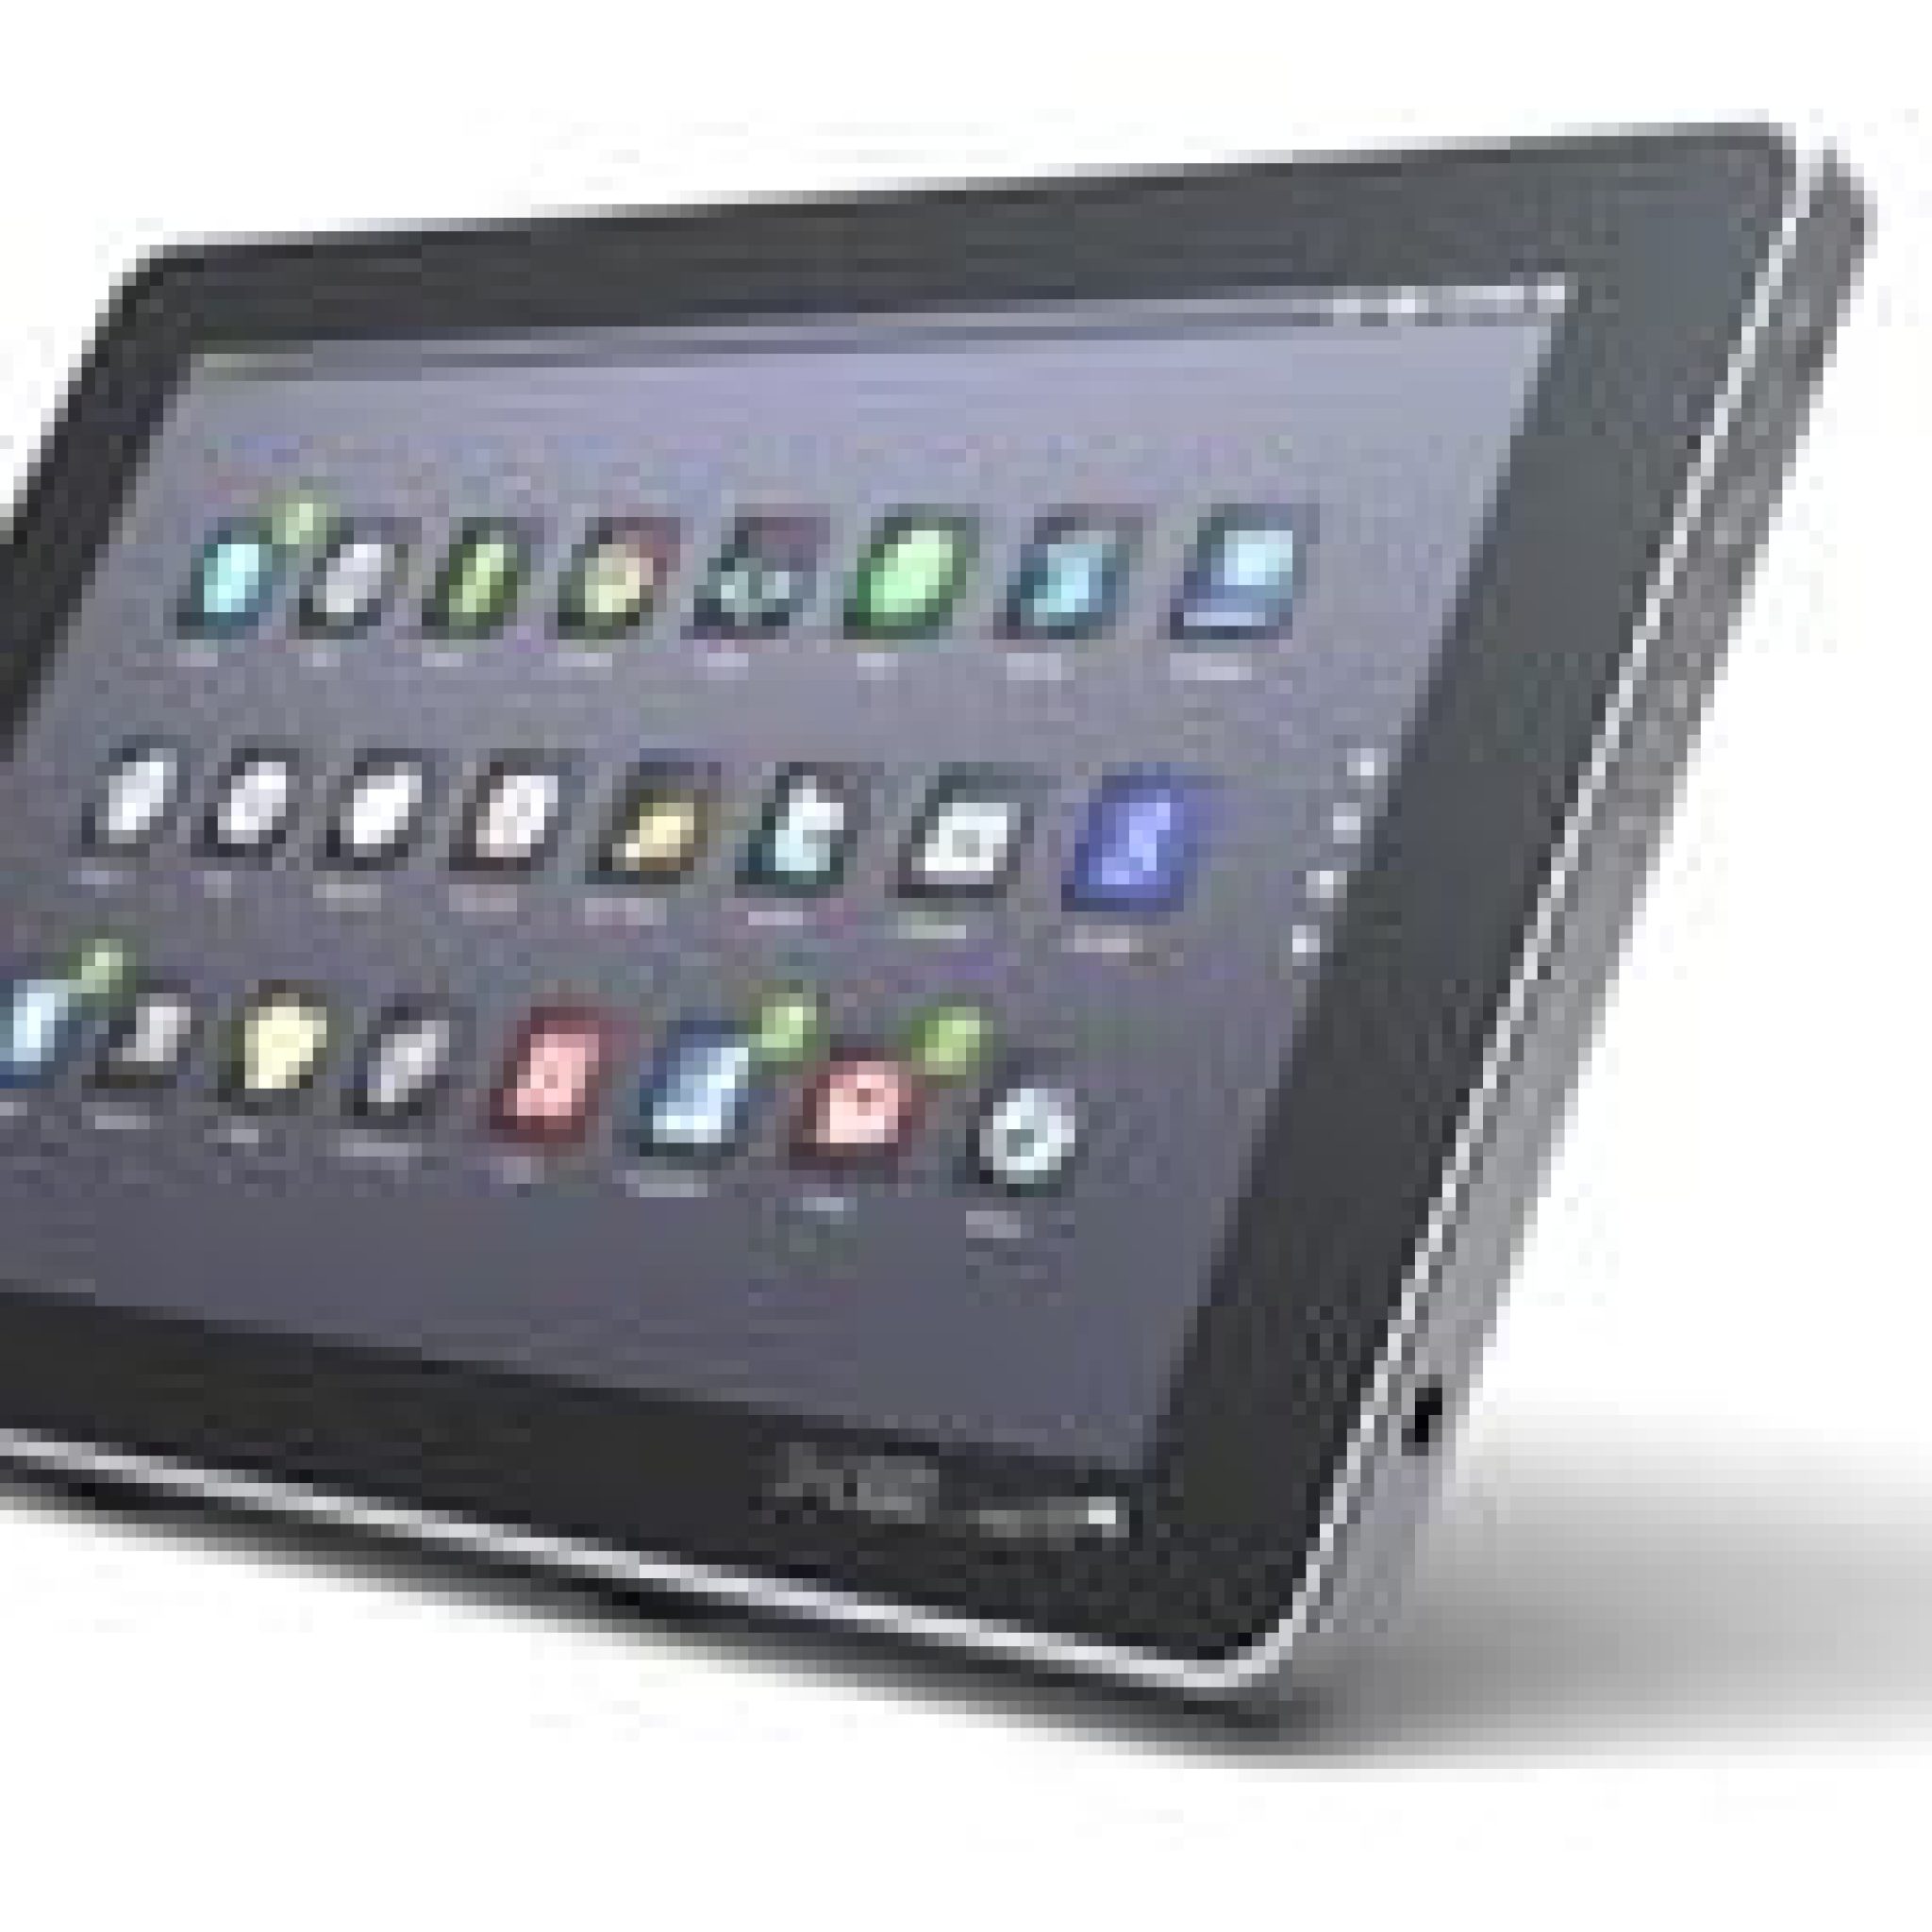 Shogo Tablet: Un Fiel Competente Del Ipad Que Incorpora Android